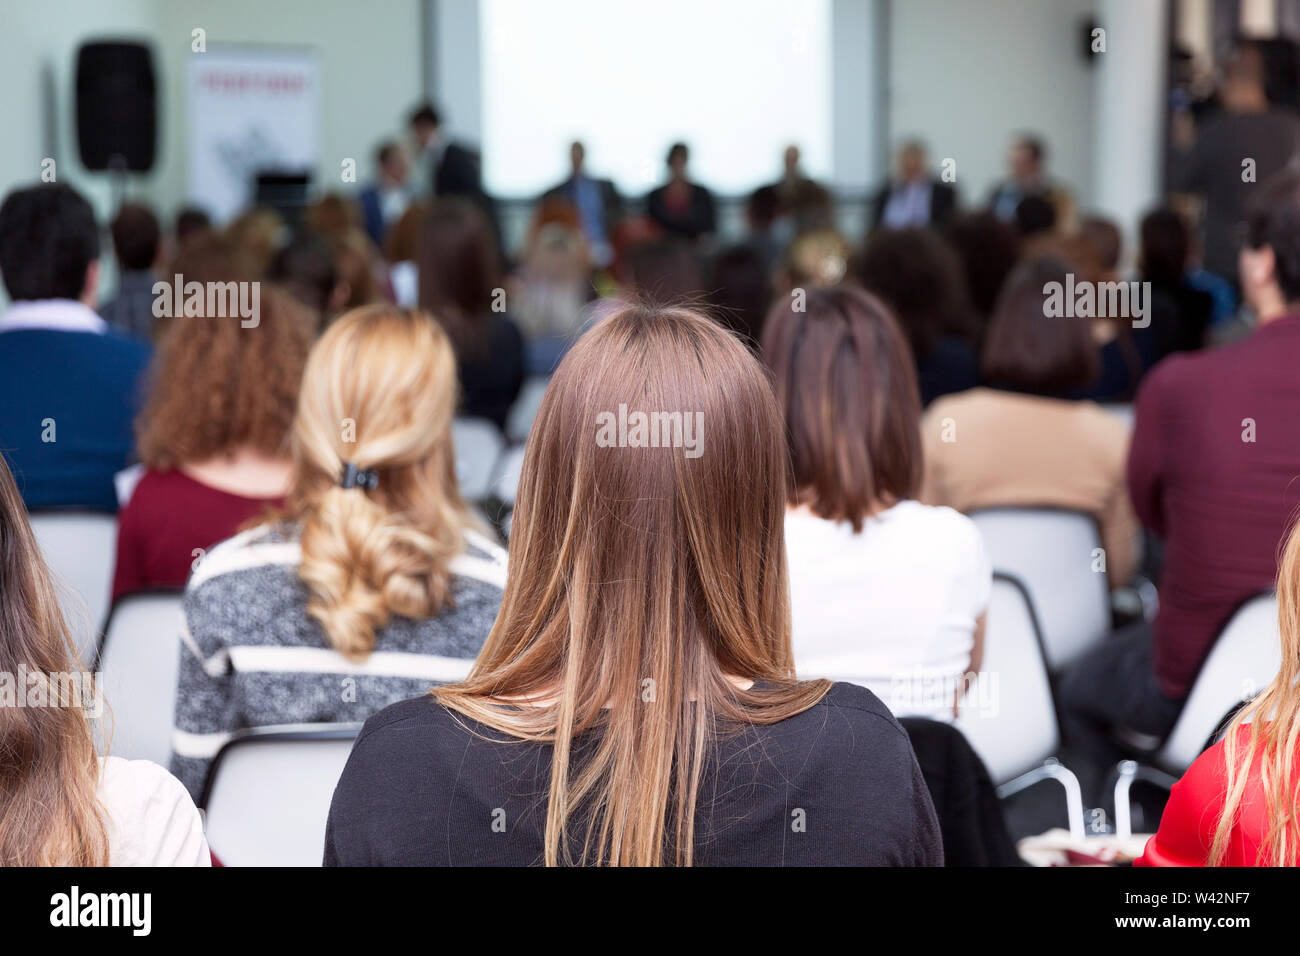 Die Teilnehmer an der geschäftlichen oder beruflichen Konferenz sitzen, hören auf die Lautsprecher Stockfoto